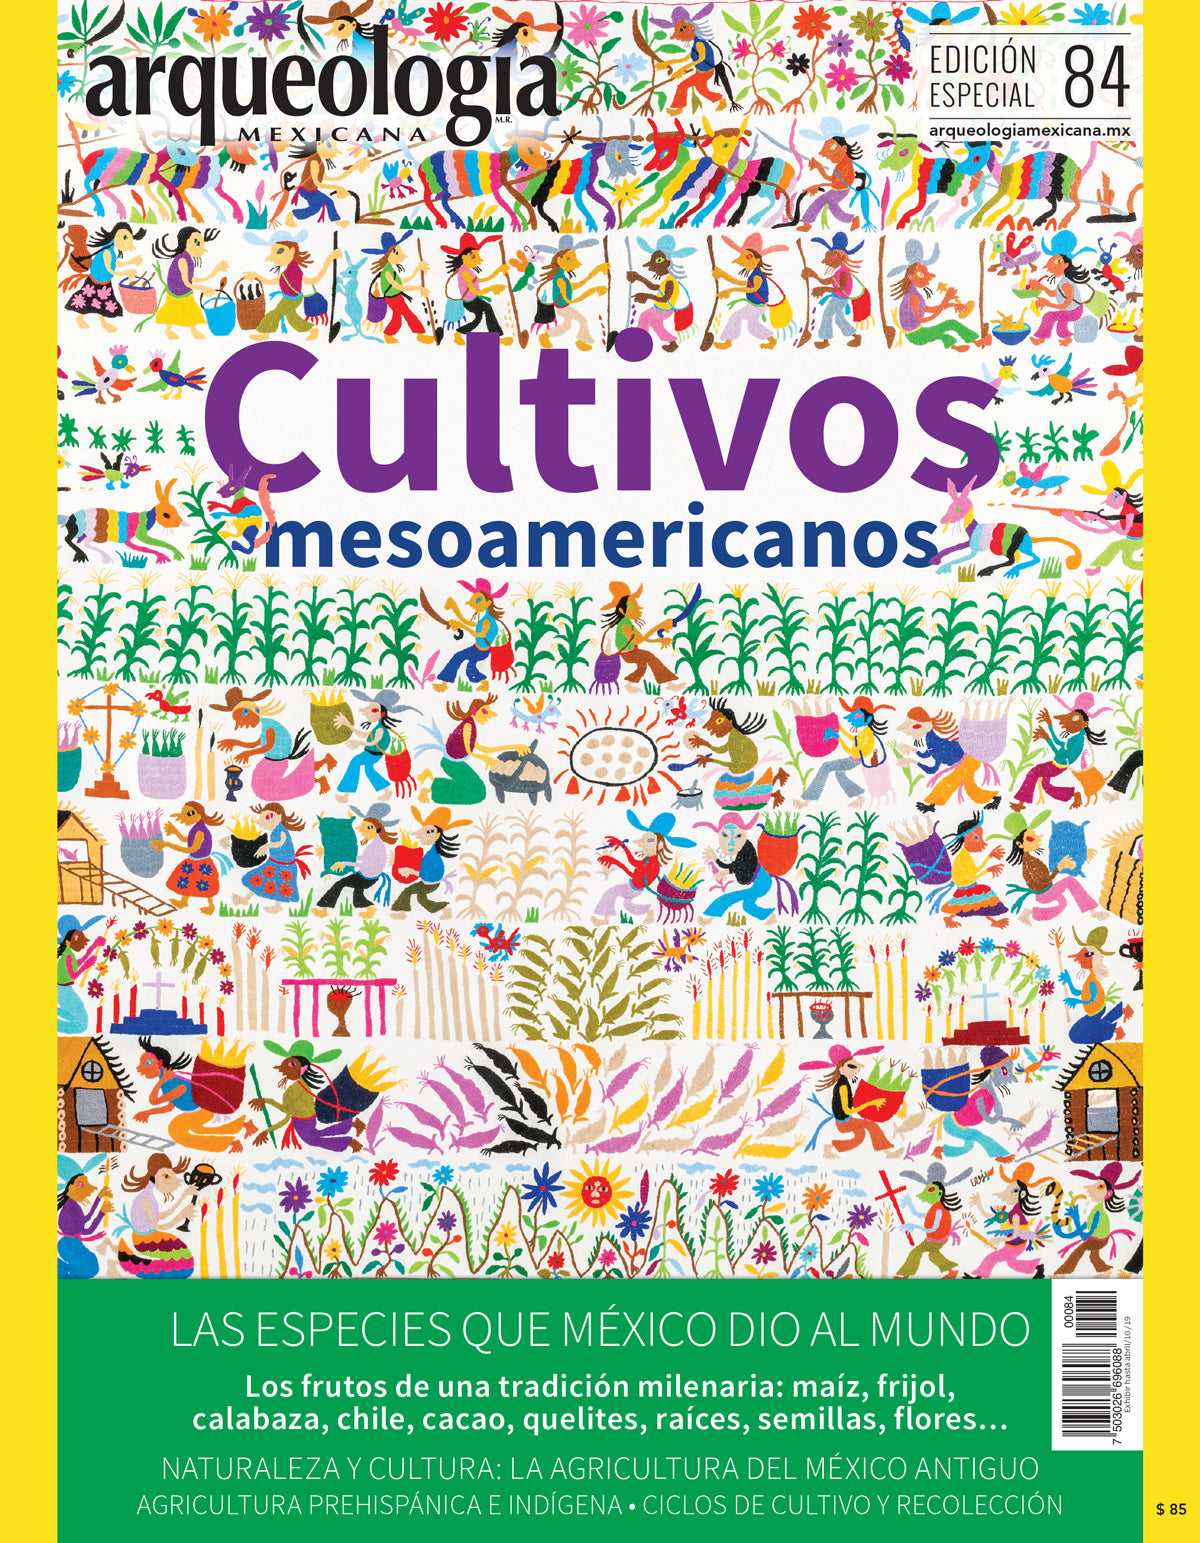 Cultivos mesoamericanos